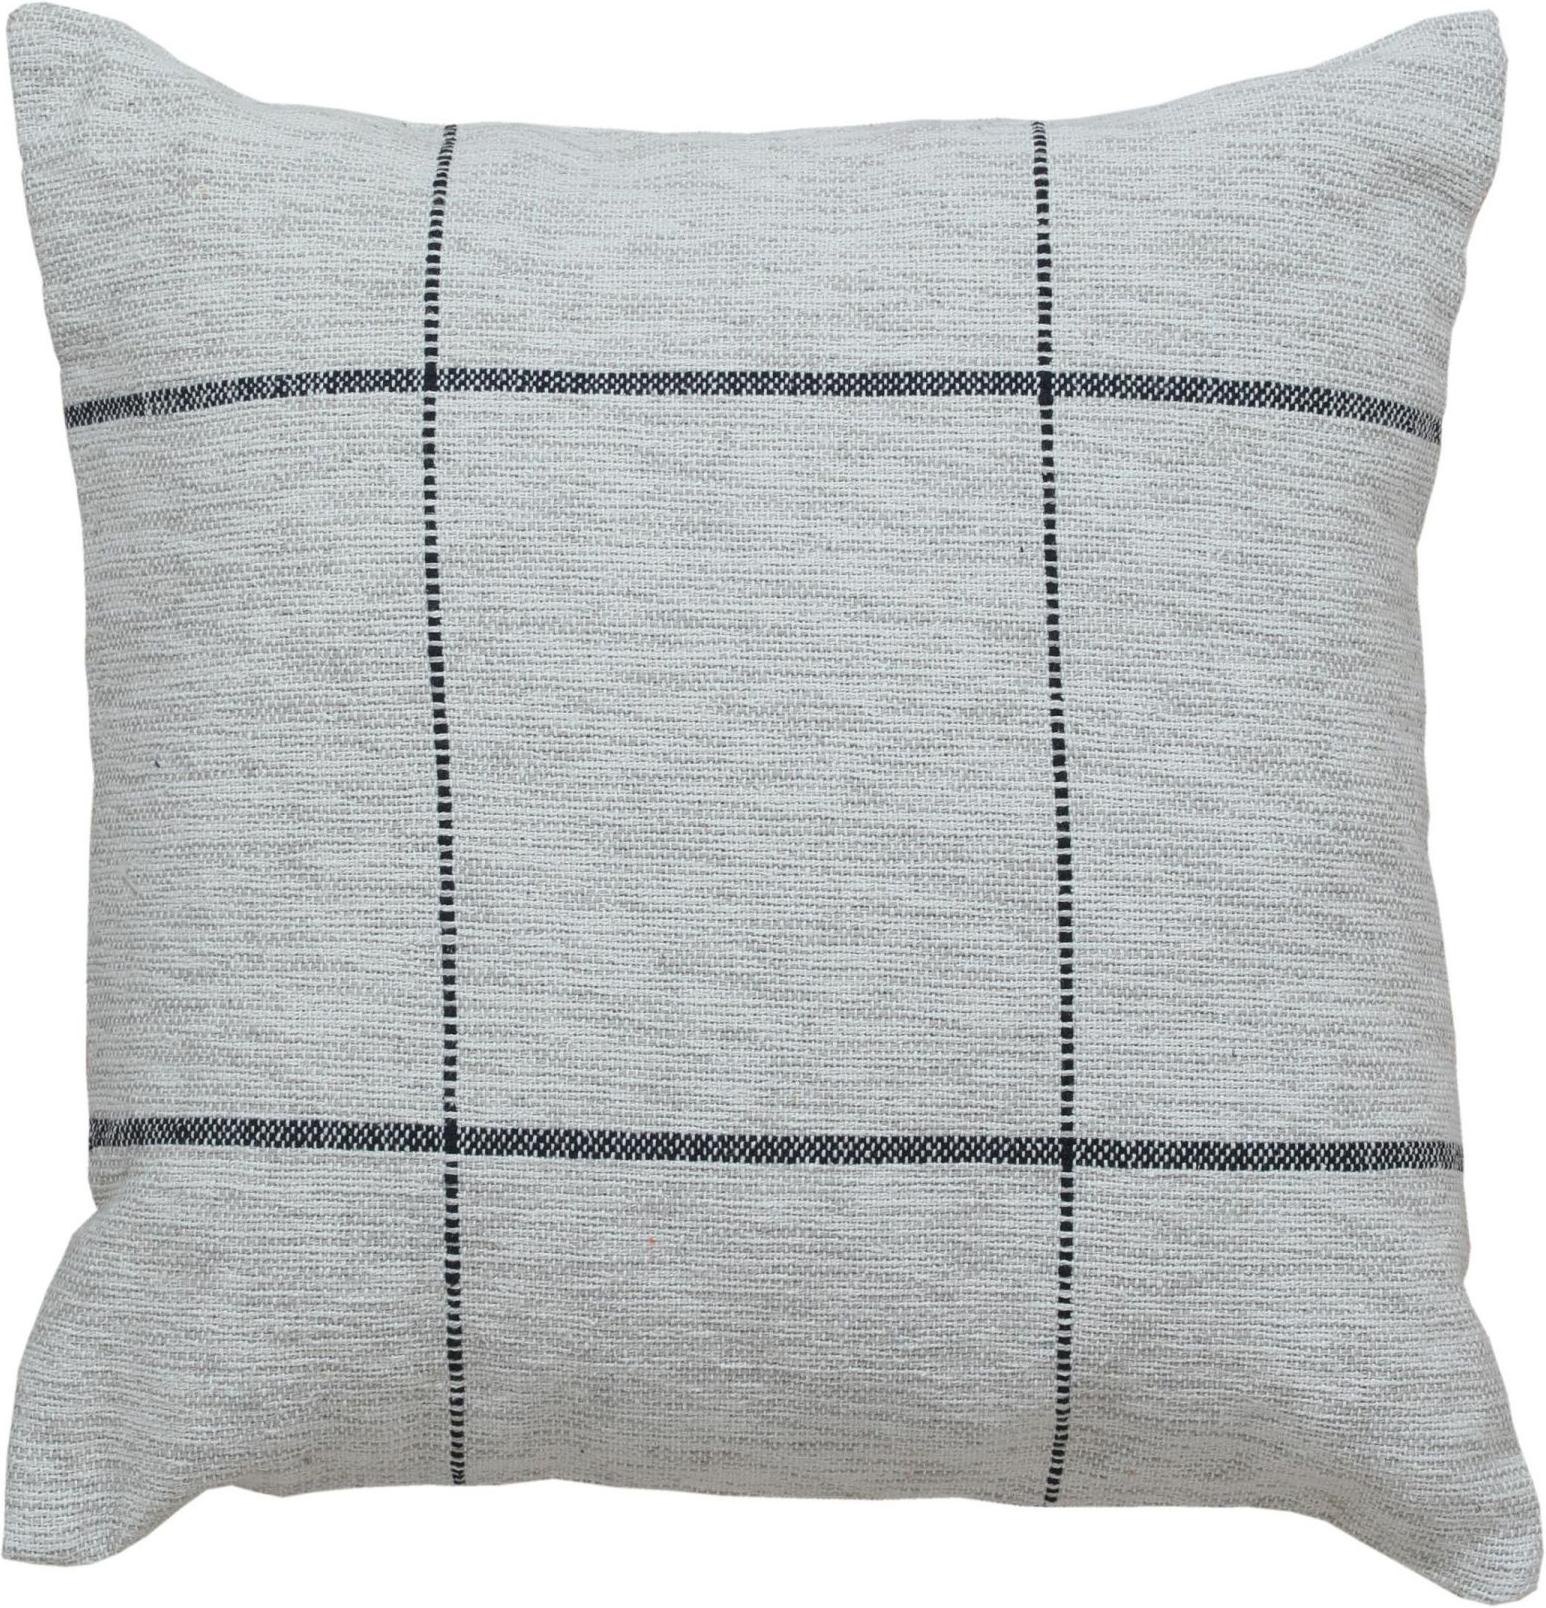 Rehaussez le look de votre maison avec un oreiller moderne chic en laine et coton, méticuleusement fabriqué à la main avec des matériaux opulents, dans une taille de 20